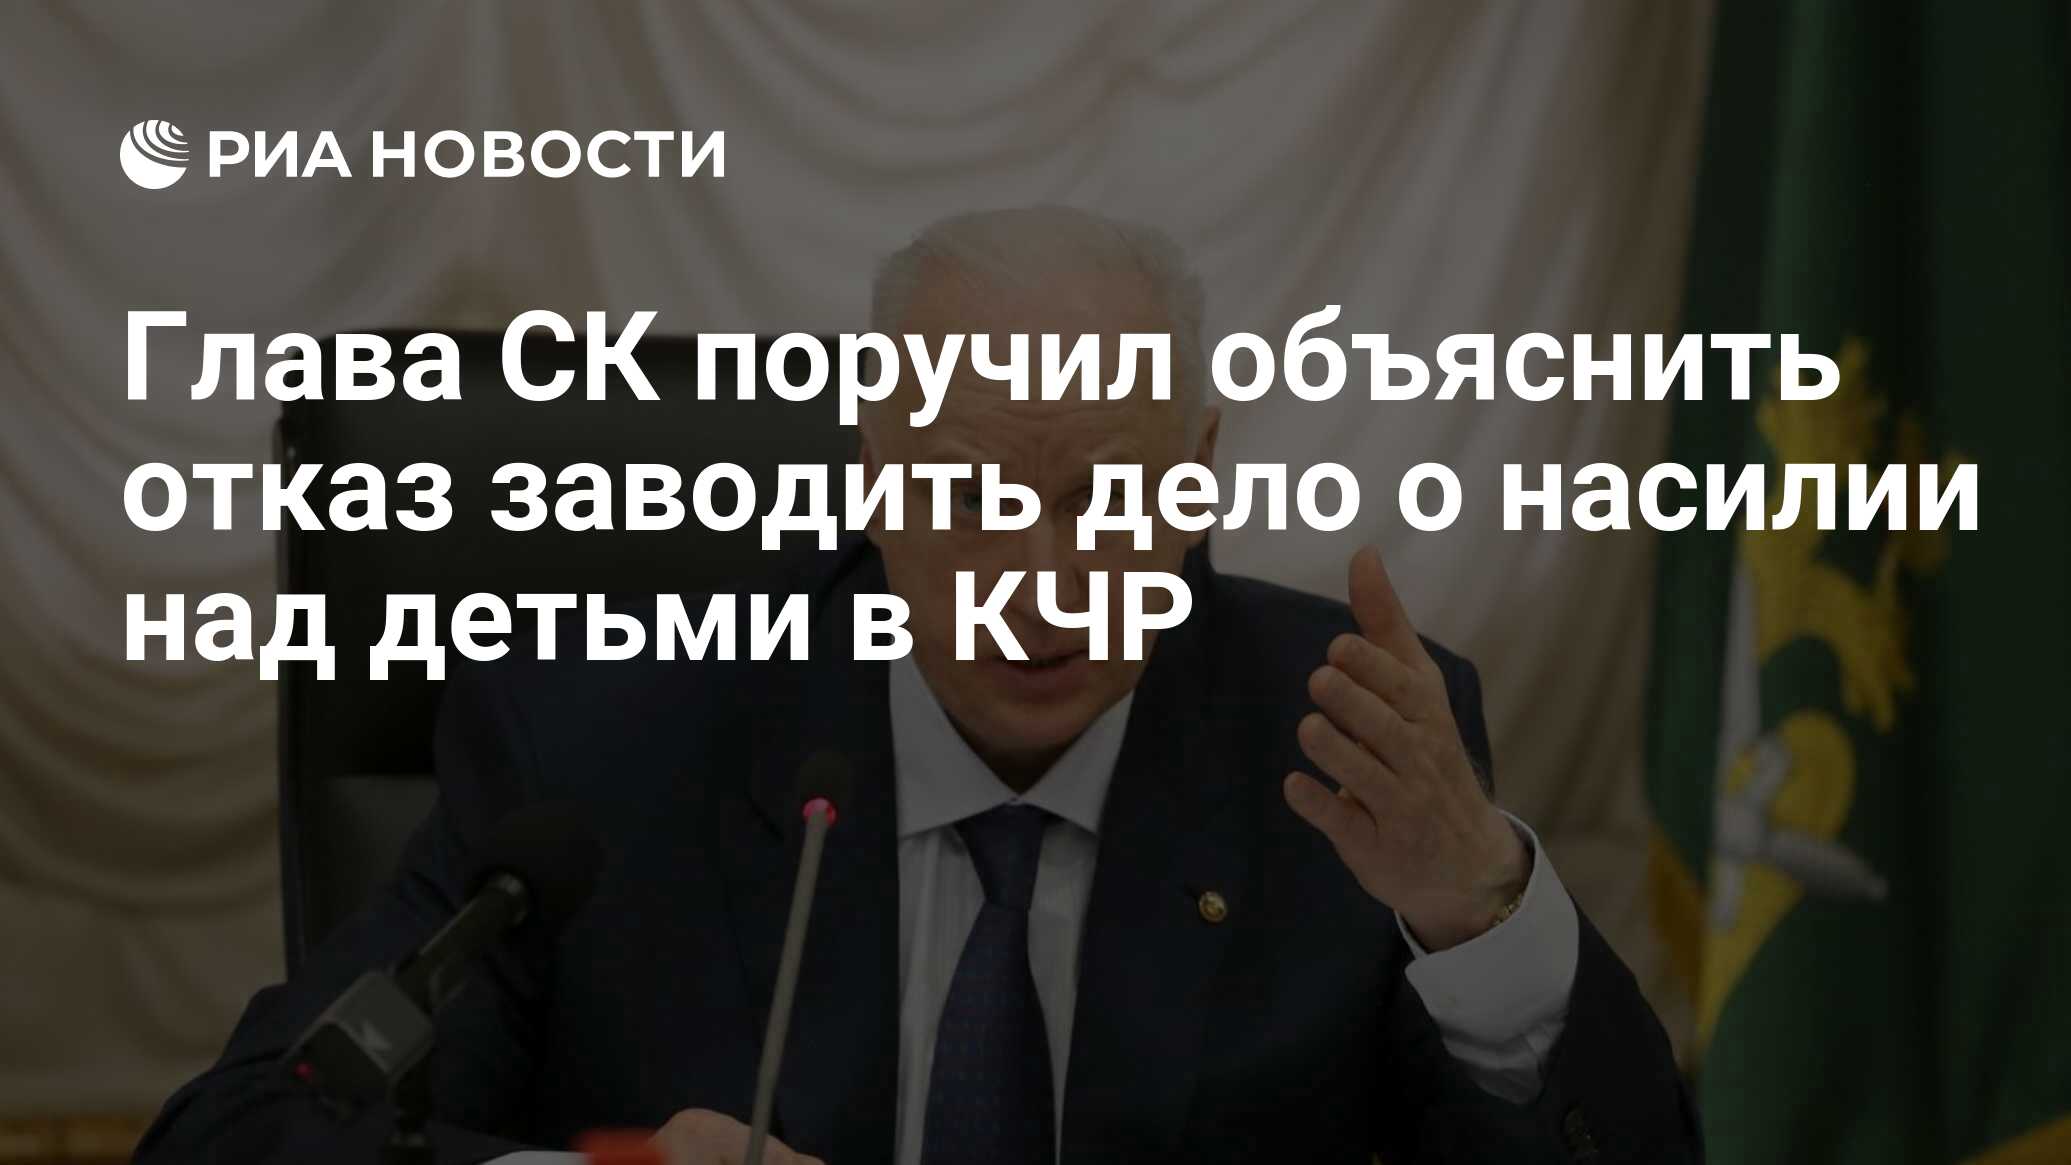 Глава СК поручил объяснить отказ в возбуждении дела об изнасиловании в КЧР